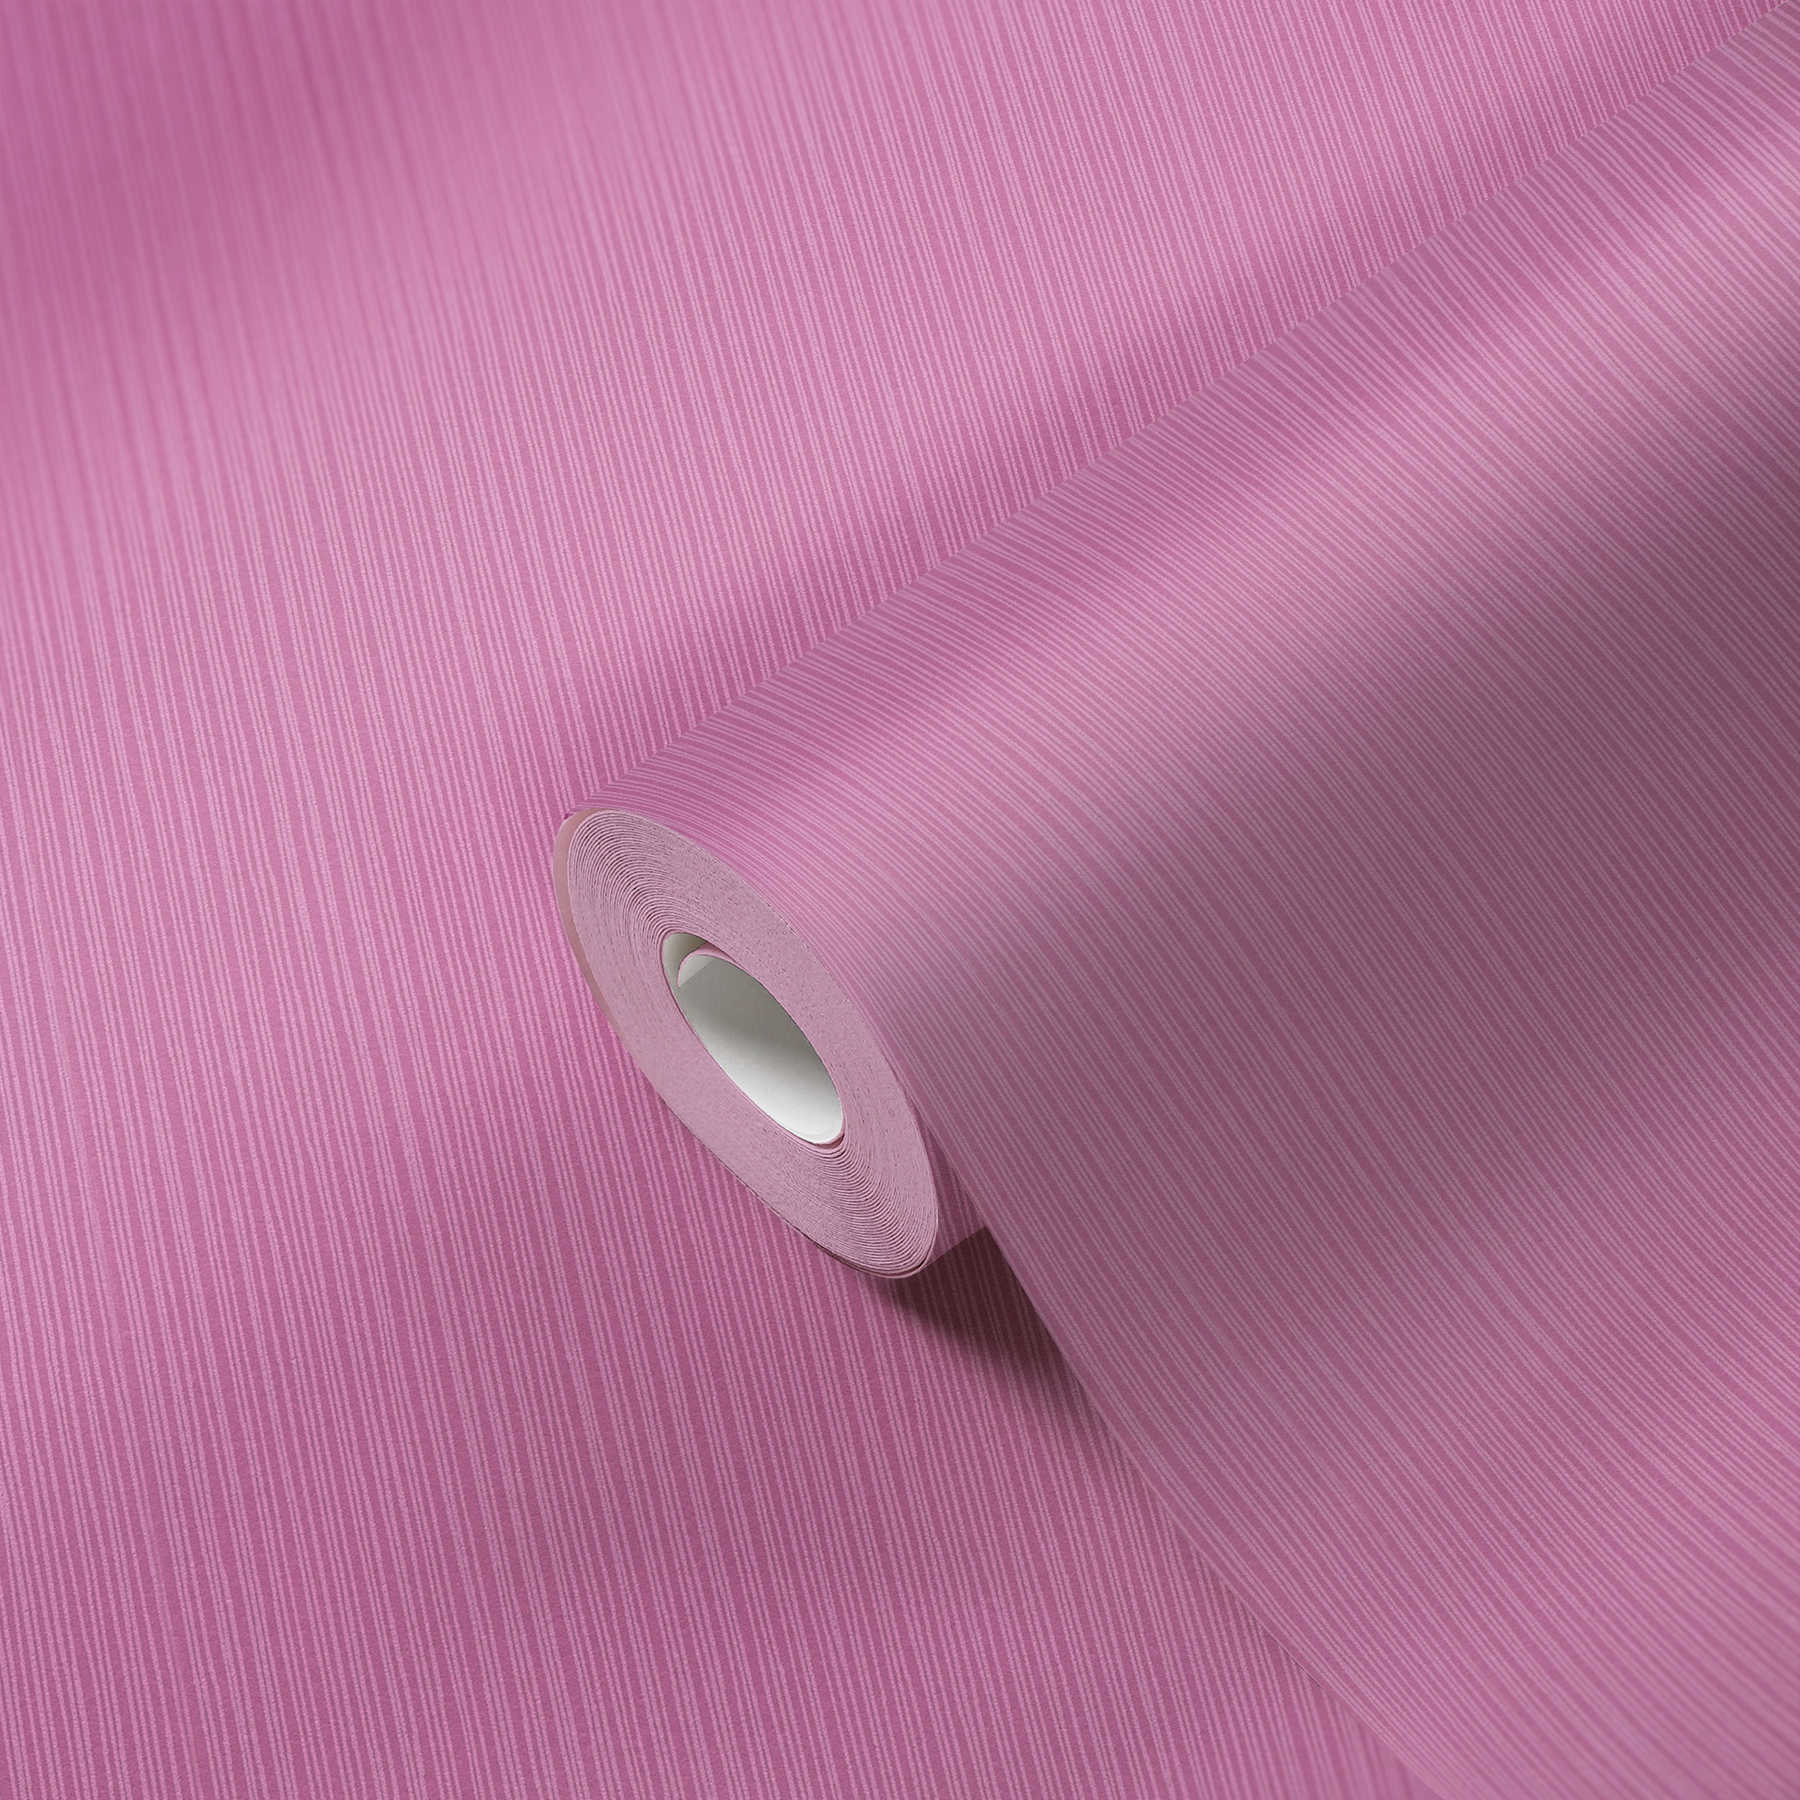             Papier peint violet avec motif de lignes & design structuré
        